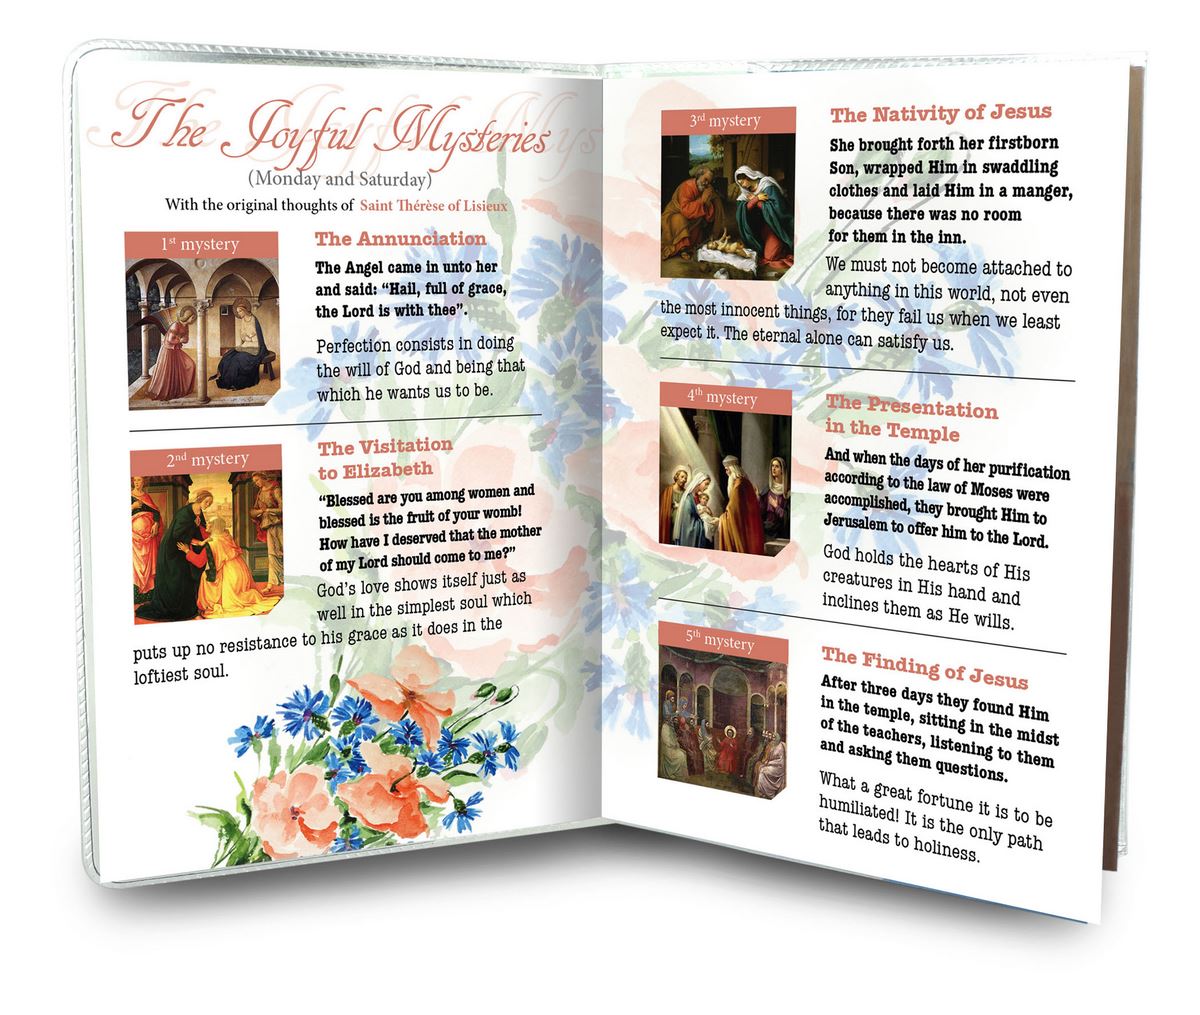 libretto con rosario santa teresa di lisieux - inglese